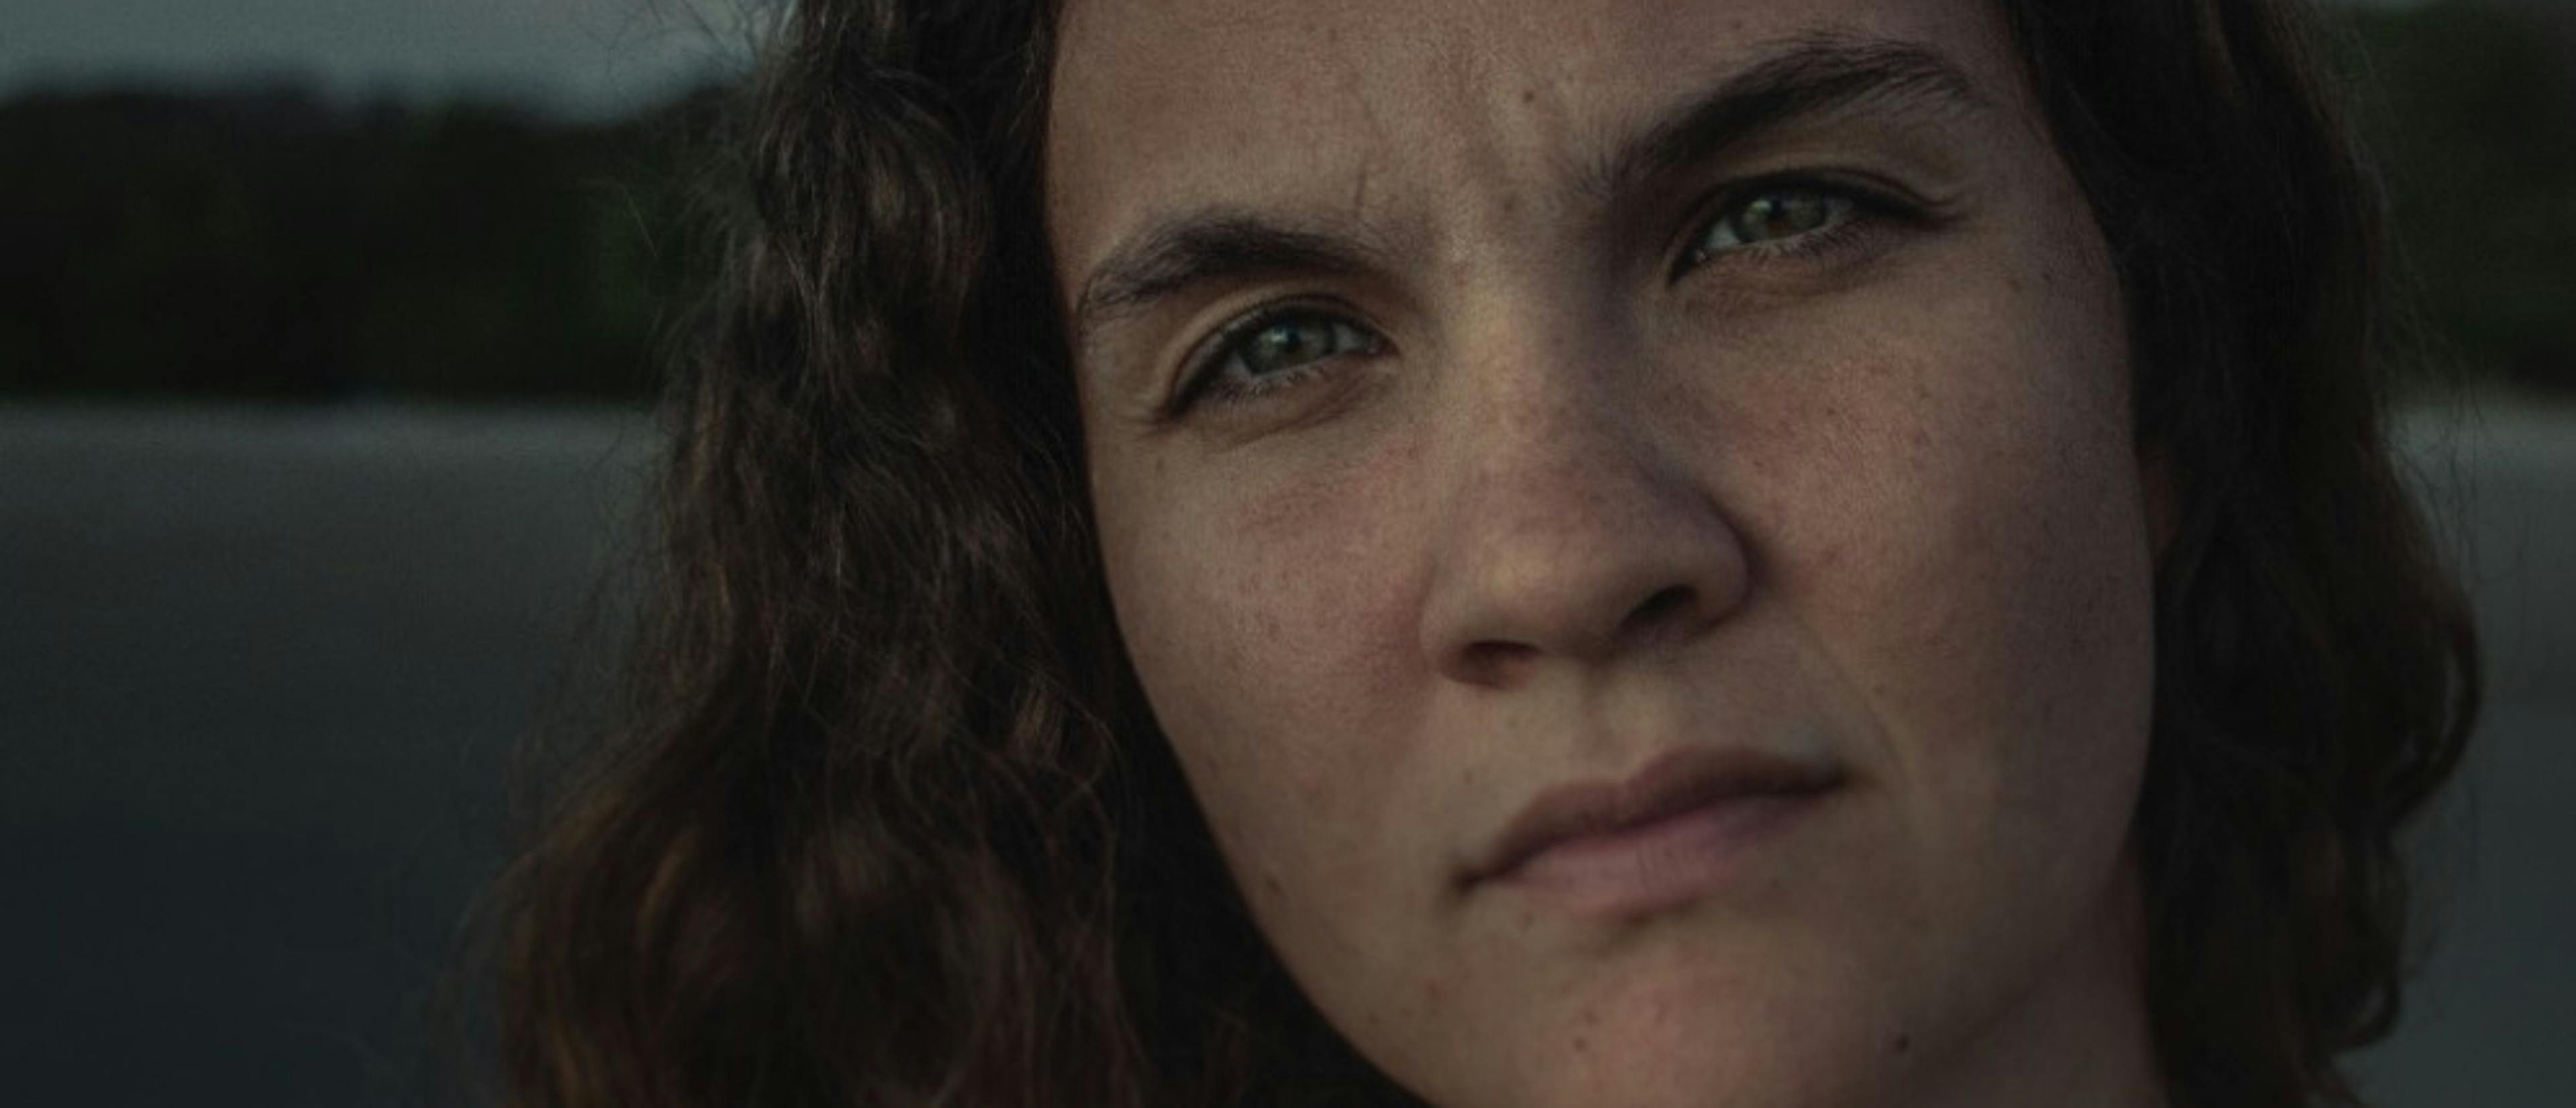 Laura Baumeister estrena su primera película en España, 'La hija de todas las rabias'